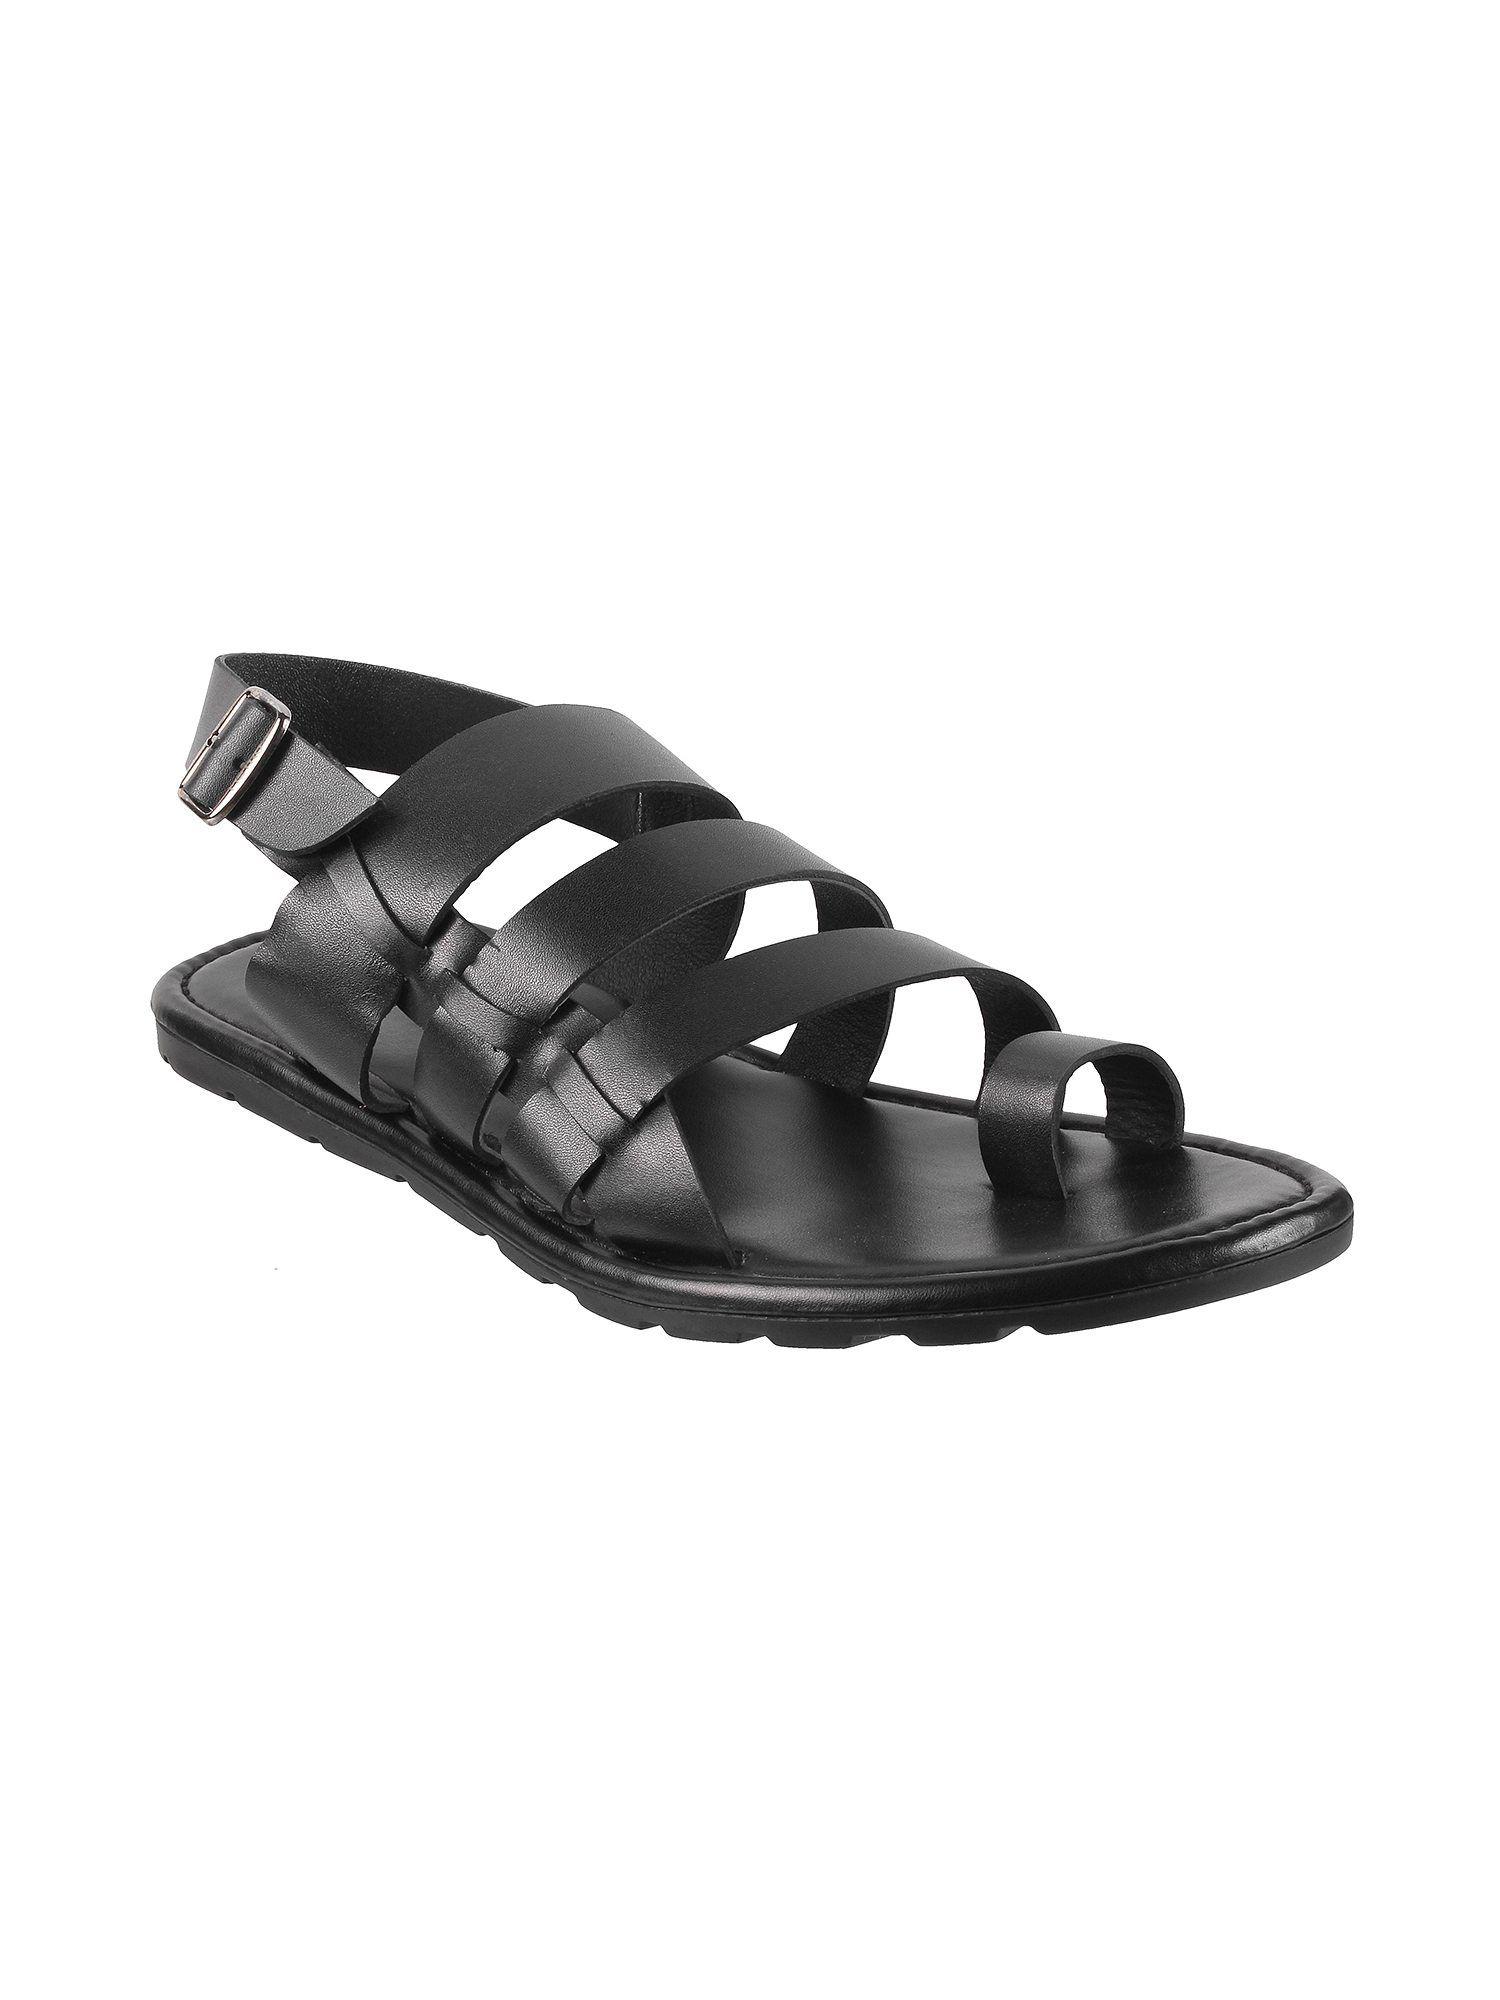 solid black sandals